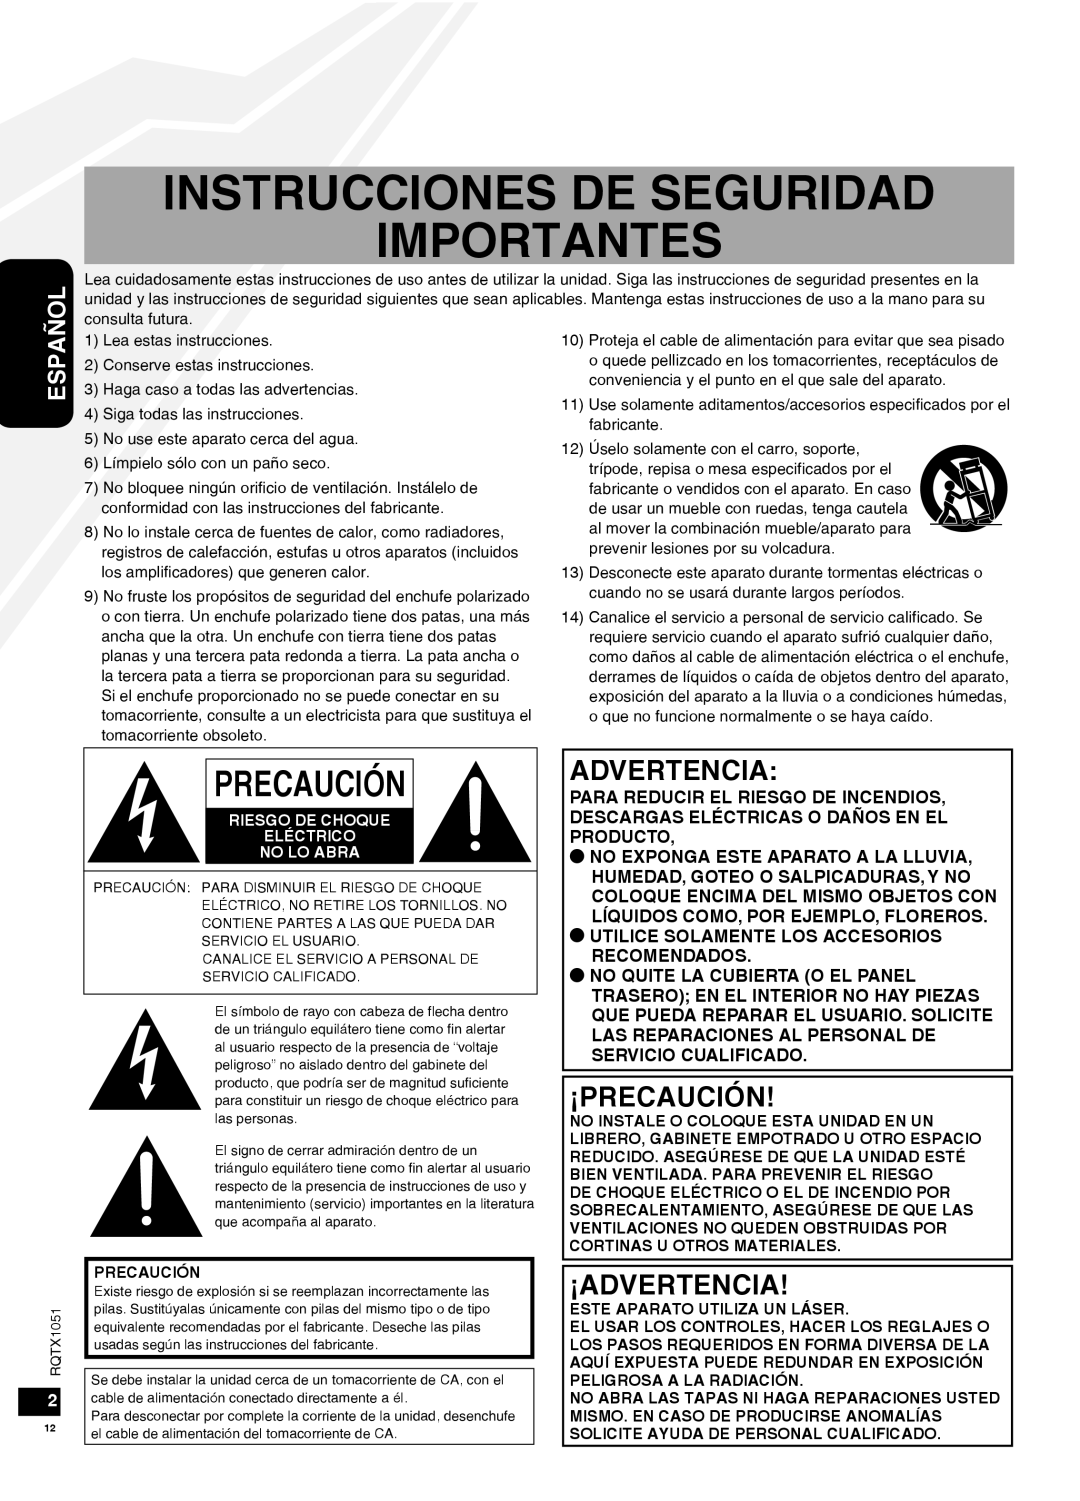 Panasonic SC-HC20 Instrucciones De Seguridad Importantes, Precaución, Español, Riesgo De Choque Eléctrico No Lo Abra 